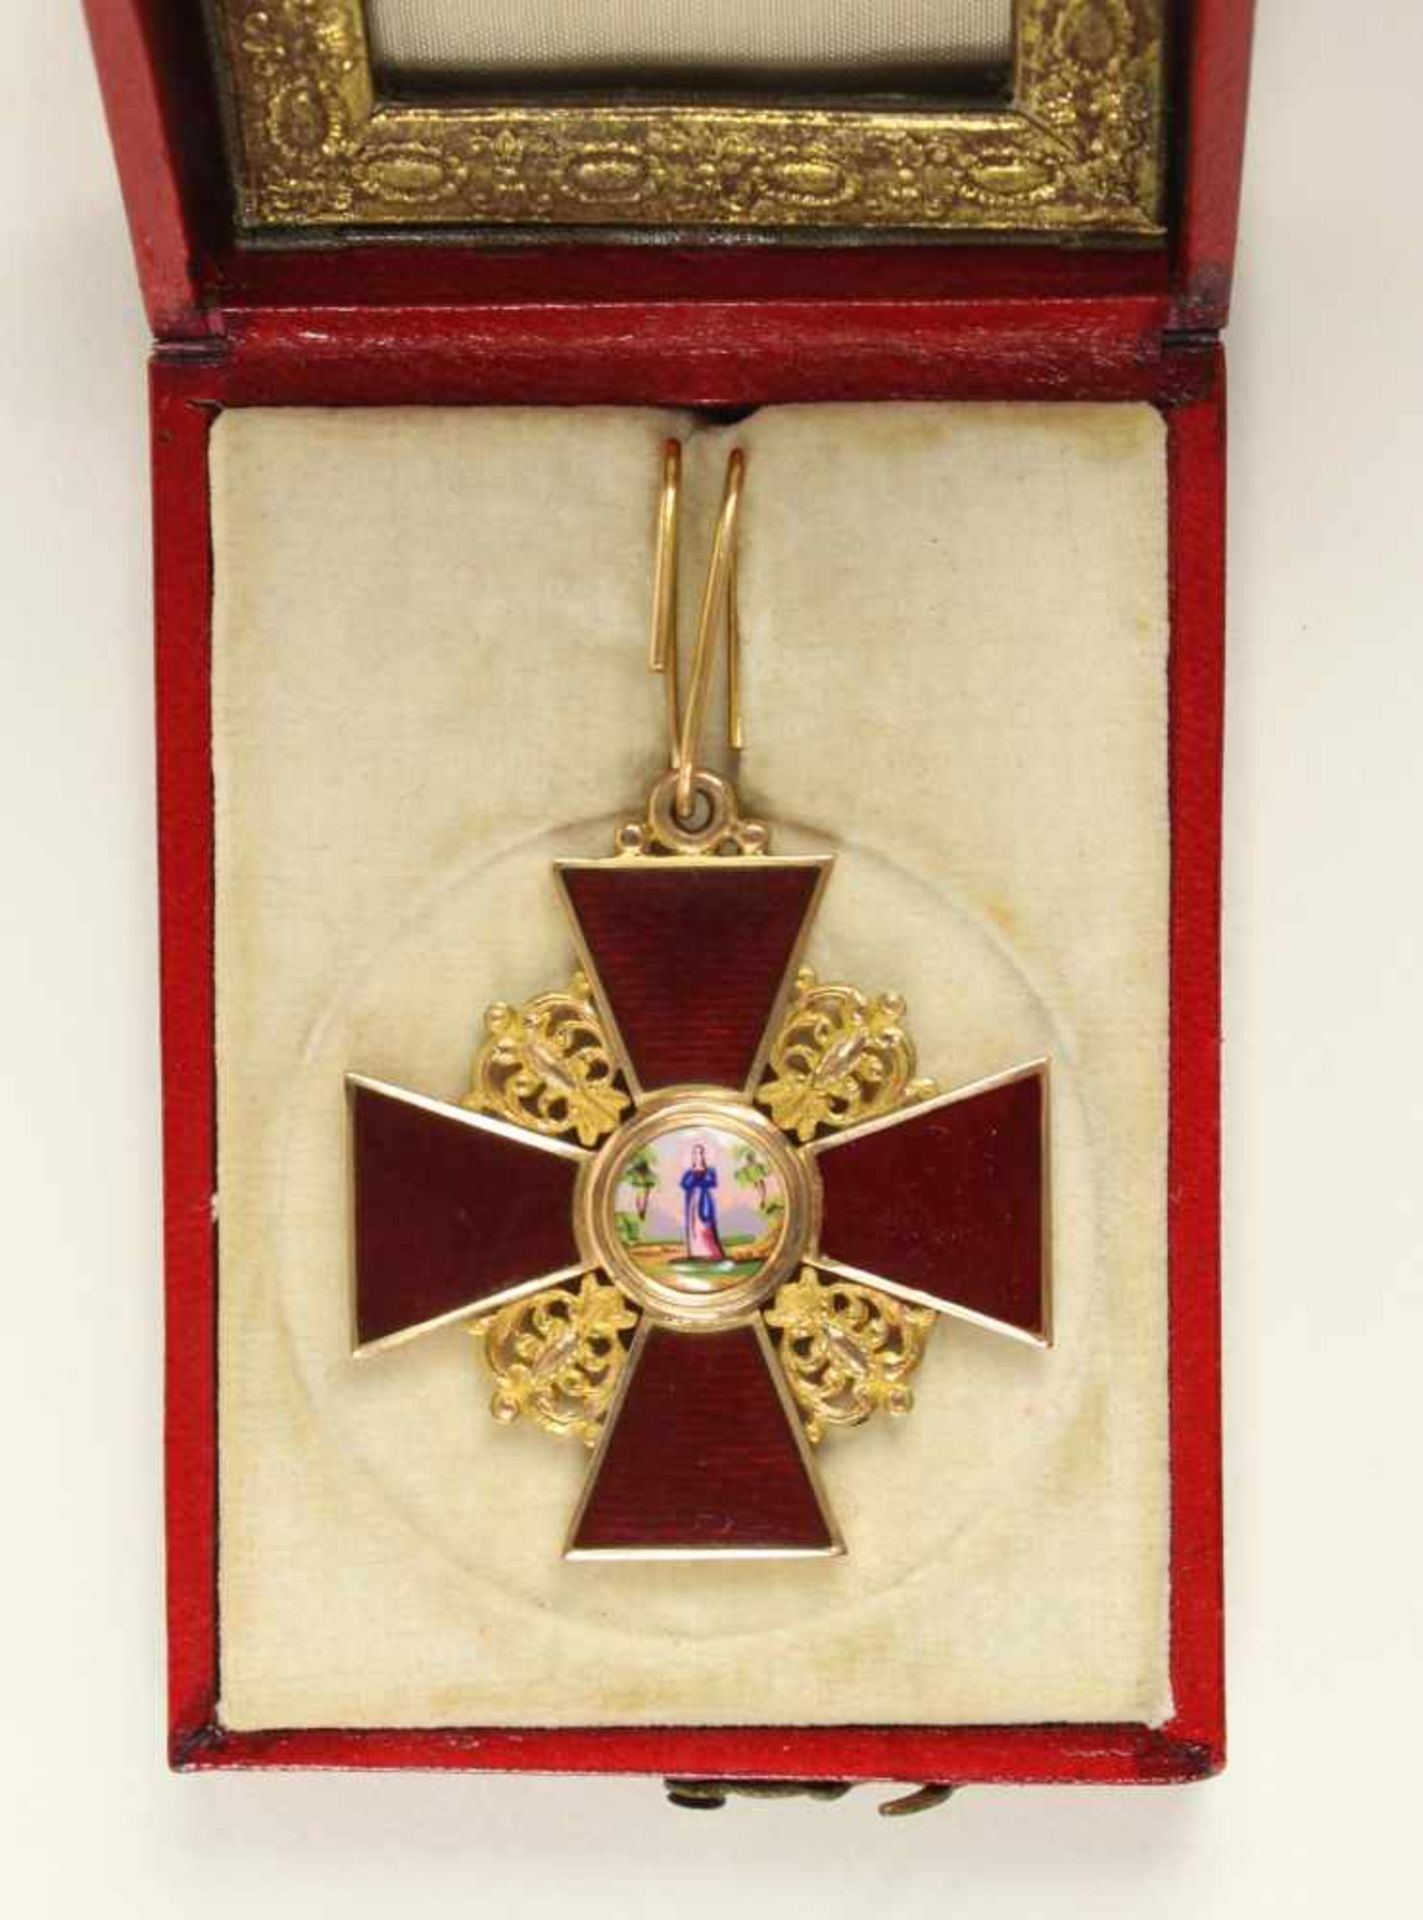 St. Anna-Orden, Kreuz 2. Klasse. Kreuz Gold emailliert, 42mm, das Medaillon fein gemalt, das